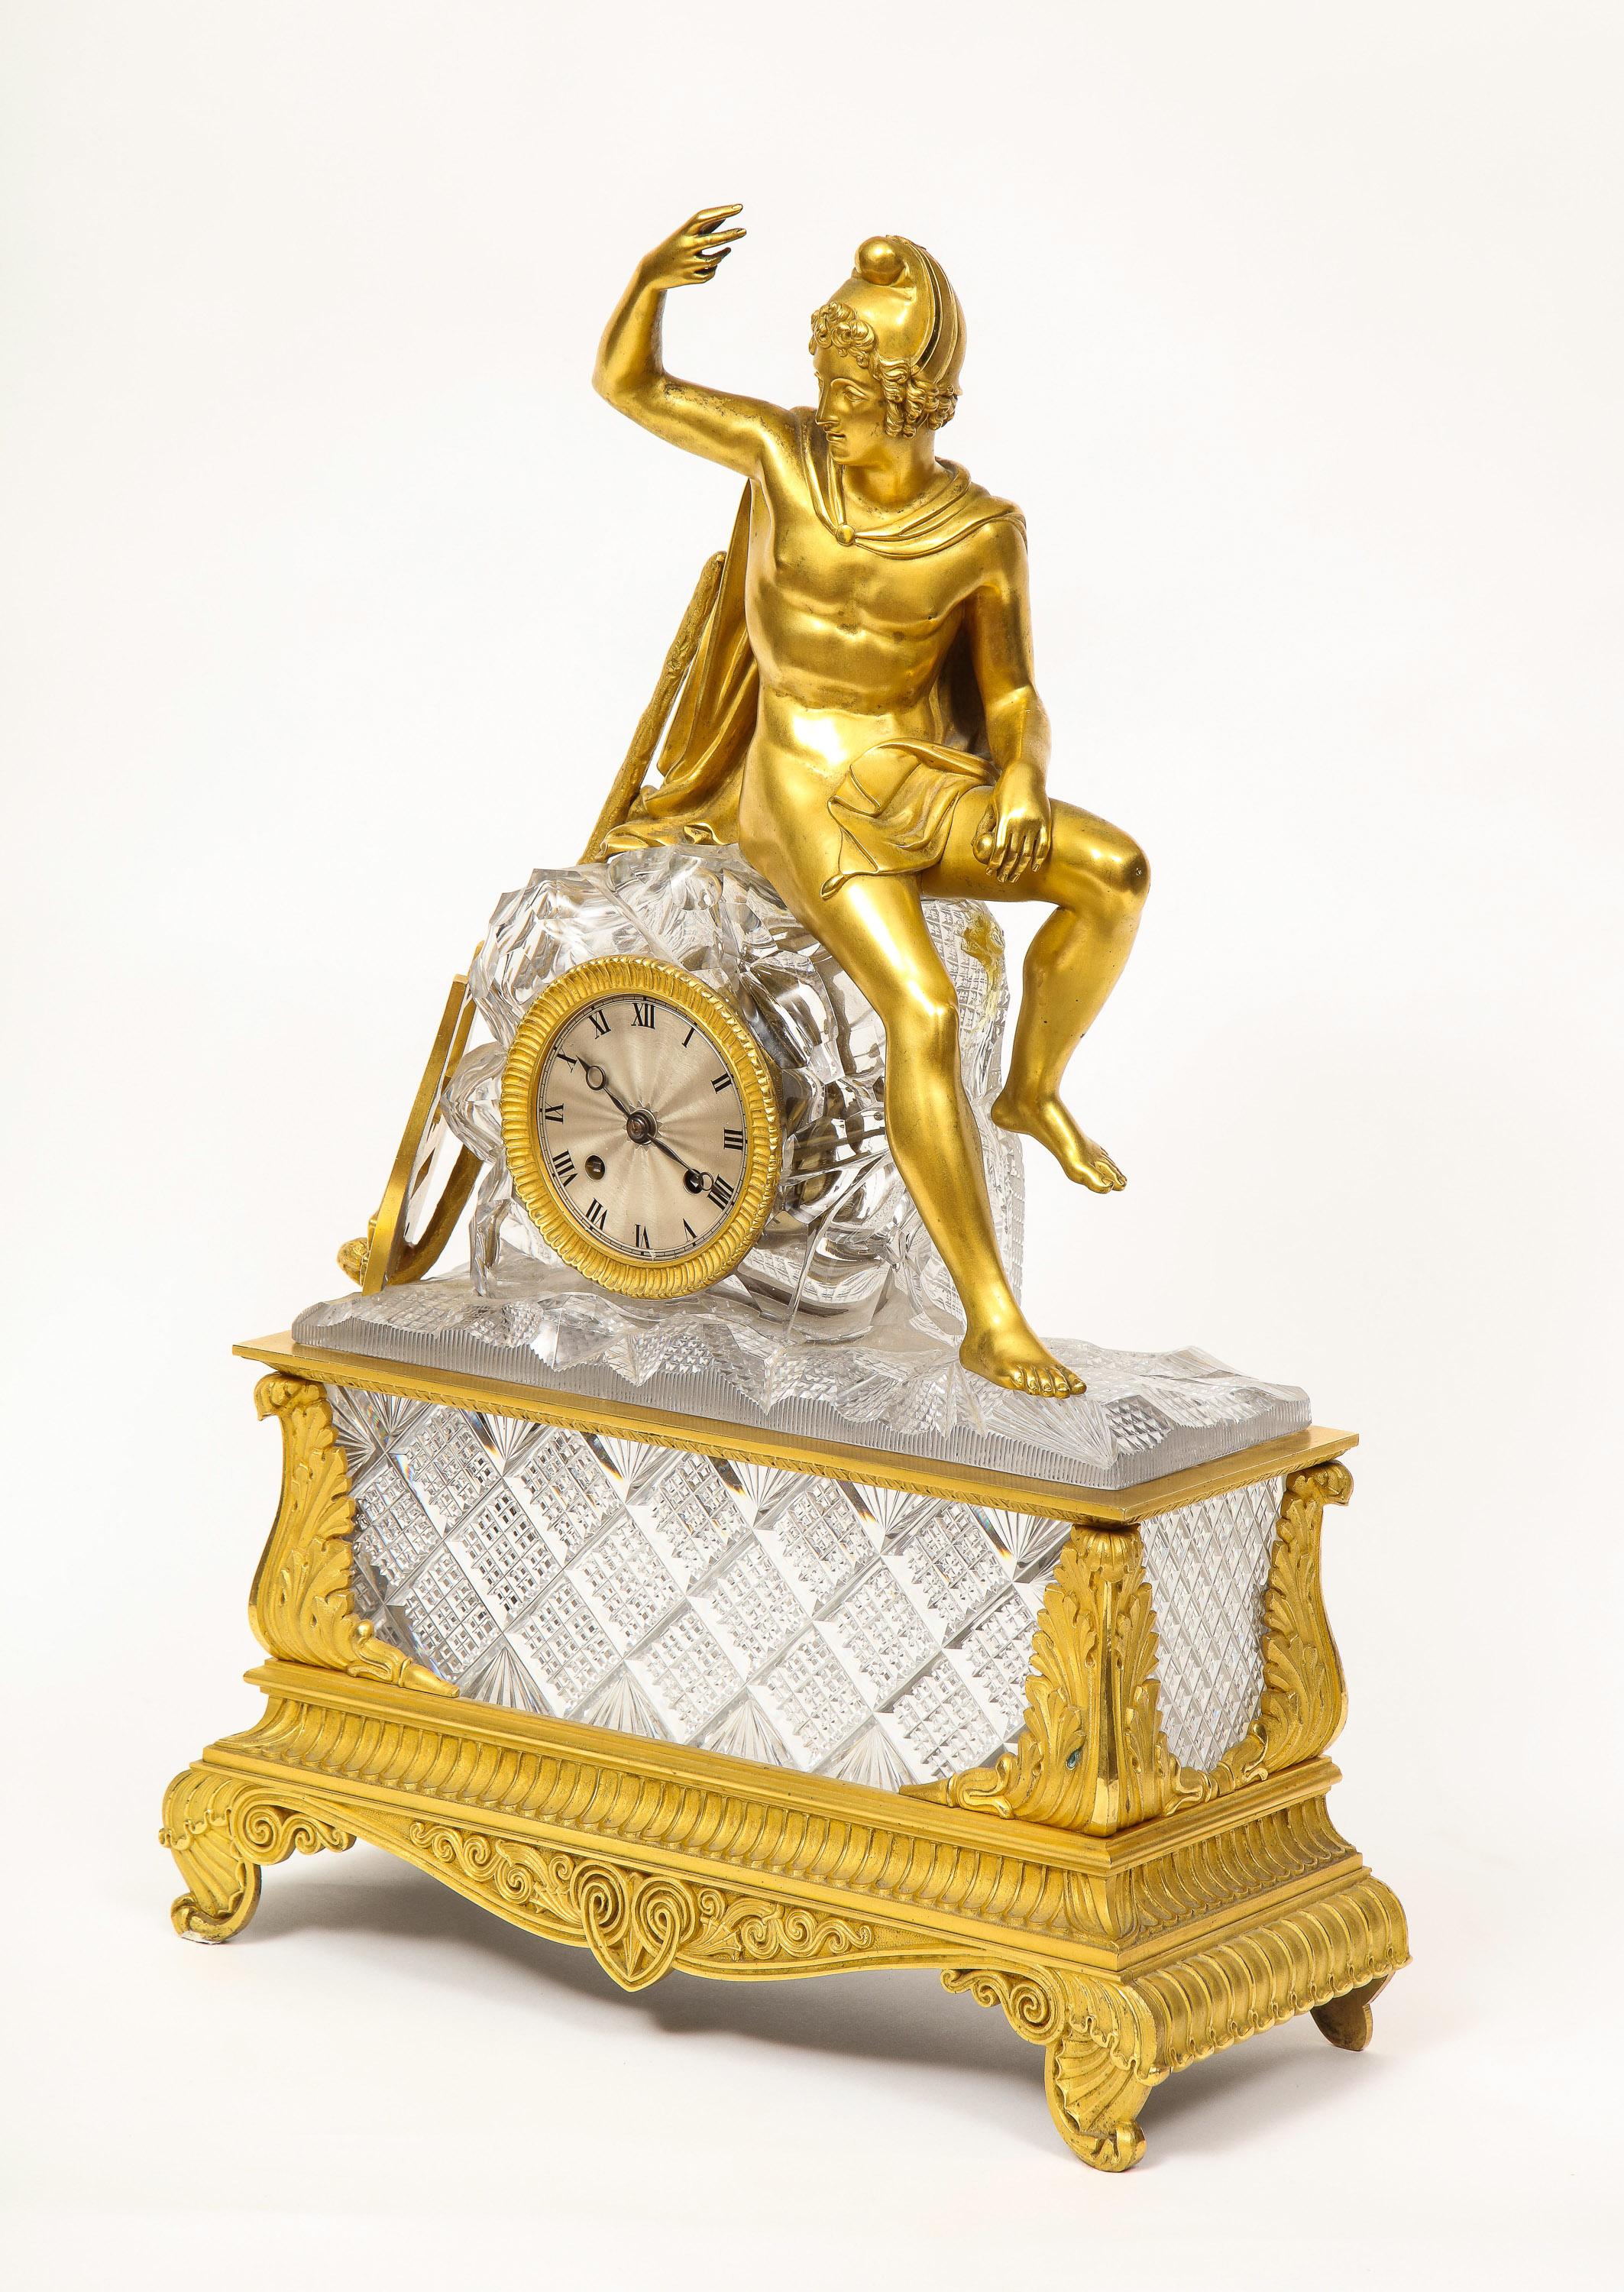 Eine exquisite französische Empire-Uhr aus Ormolu und geschliffenen Kristallen, um 1815, Baccarat zugeschrieben.

Diese Uhr aus feinstem Quecksilbervergoldungs-Ormolu stellt eine auf einem Felsen sitzende Allegorie dar und ist mit geschnitzten,